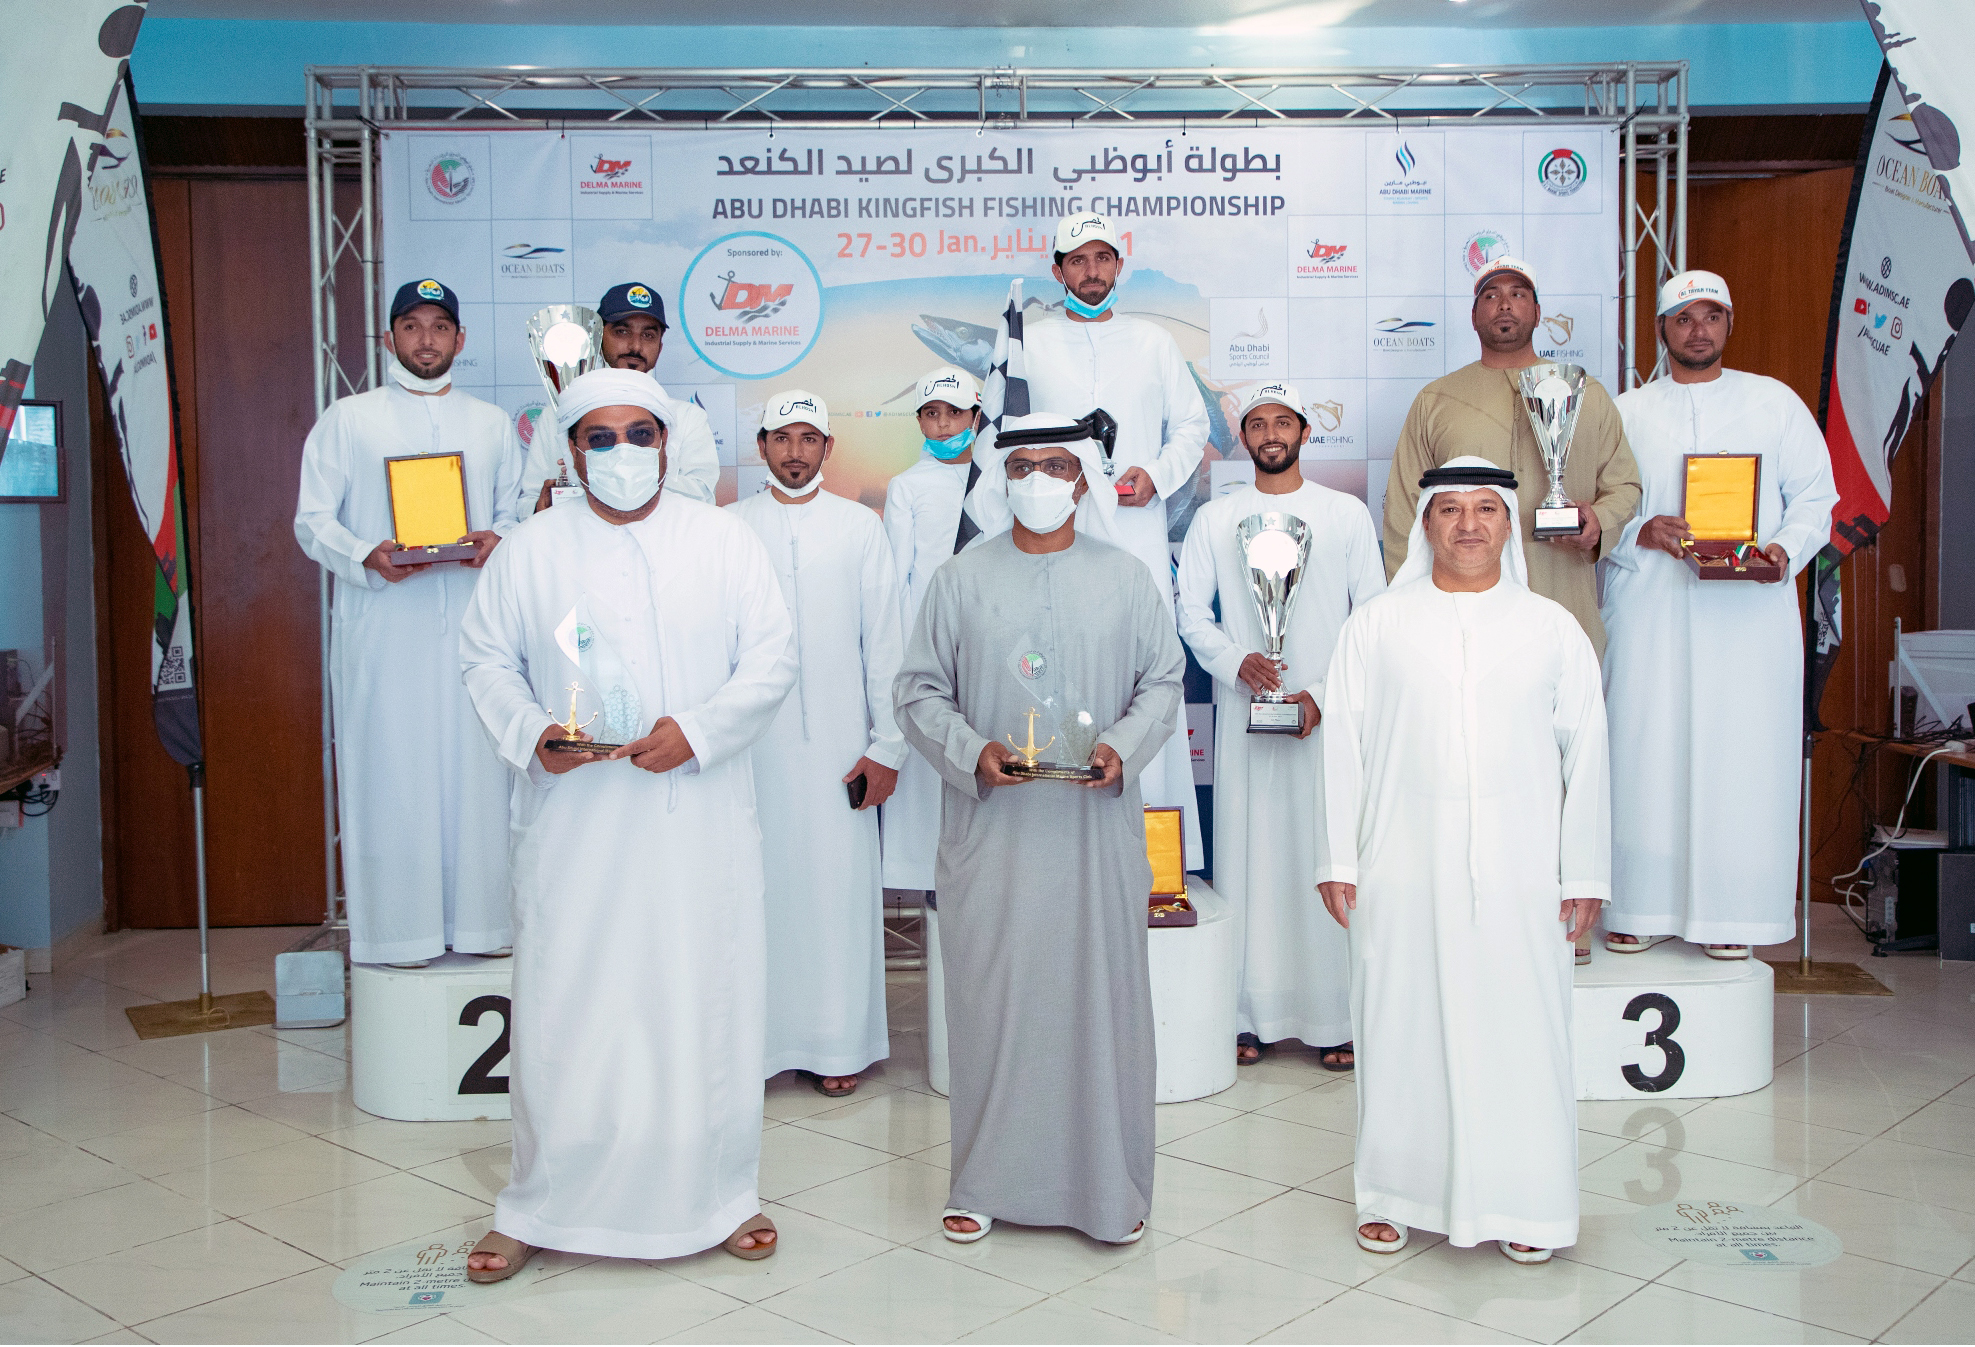 وكالة أنباء الإمارات - "الحصن" يفوز بالمركز الأول في الجولة الأولى من بطولة أبوظبي لصيد الكنعد - اخبار الامارات ENN